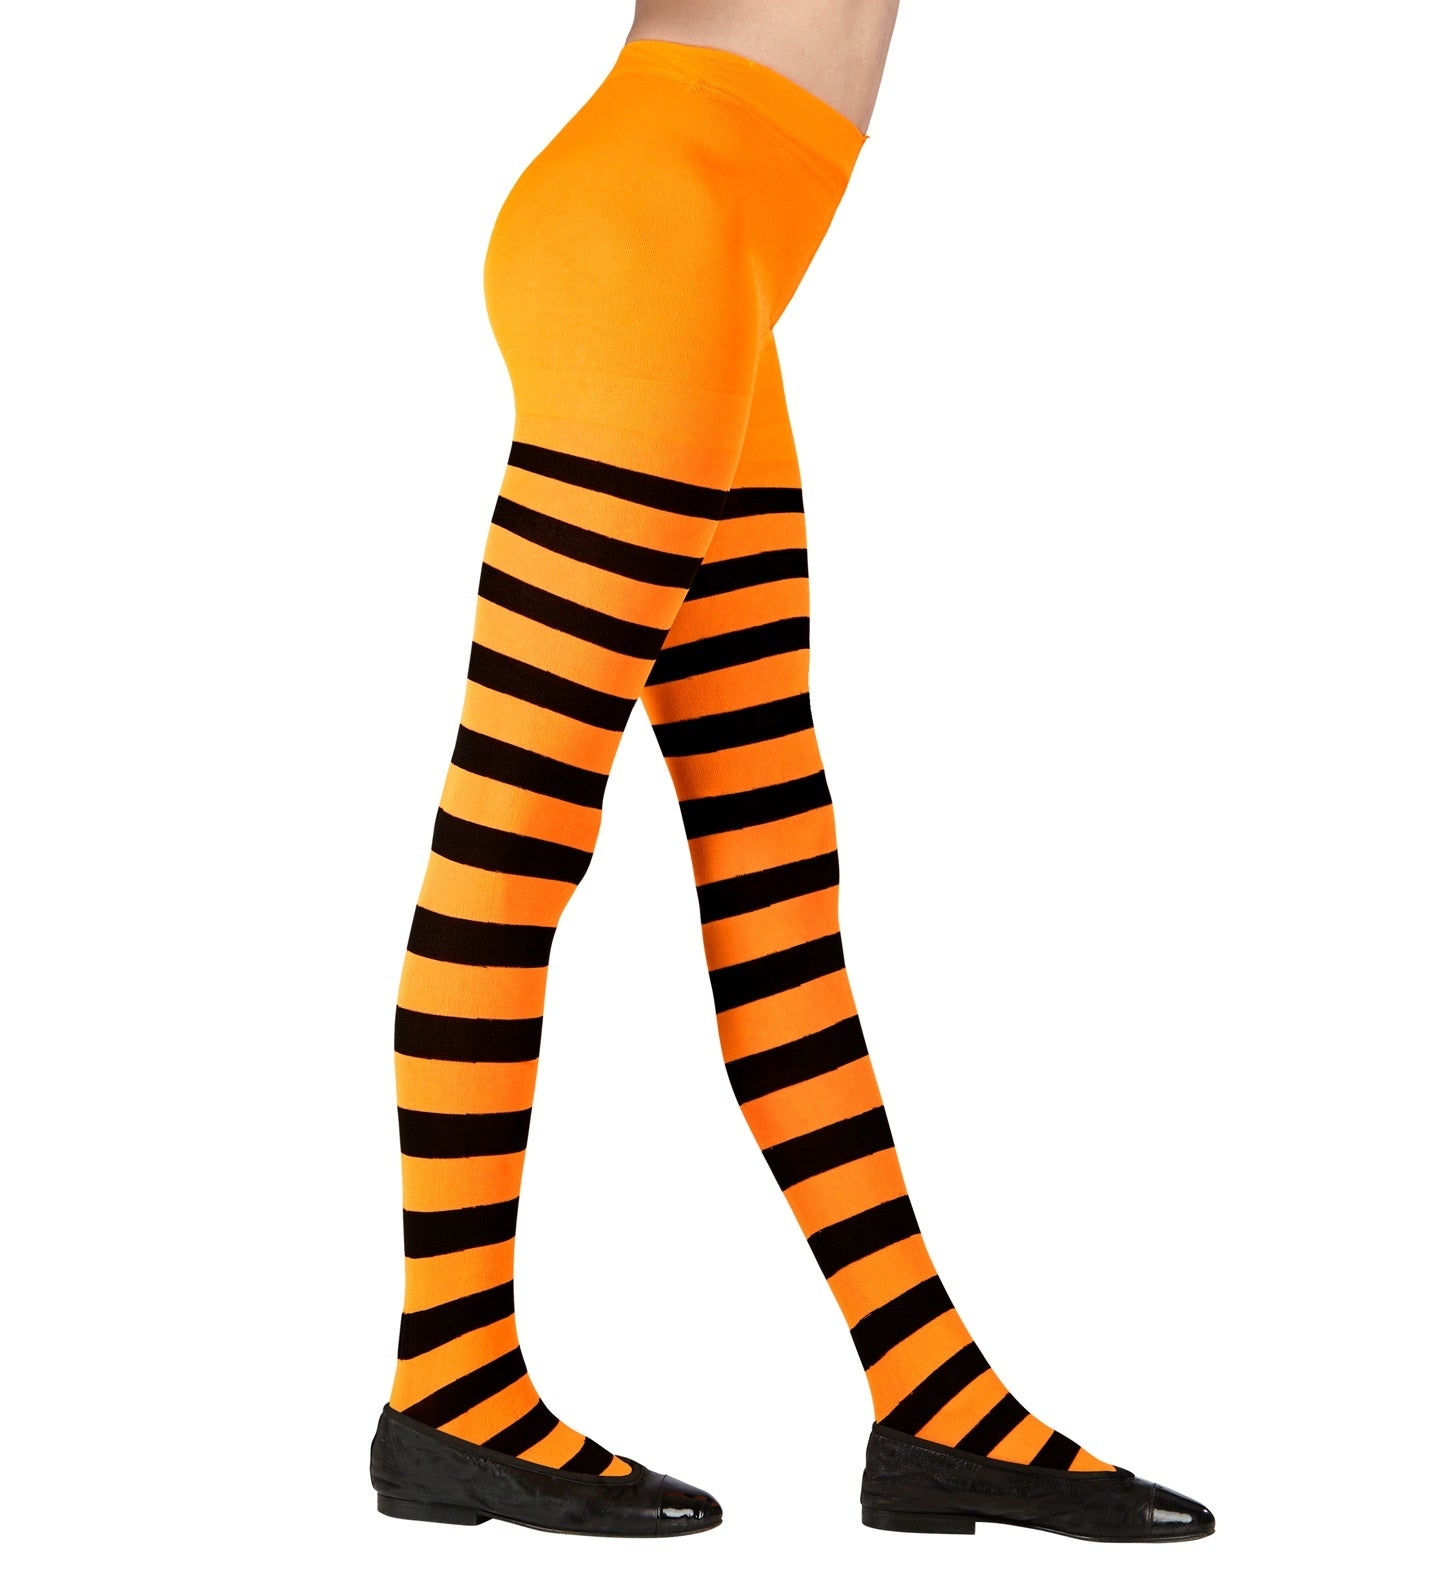 WIDMANN - Oranje met zwart gestreepte panty voor kinderen - Oranje - 116 (4-5 jaar)